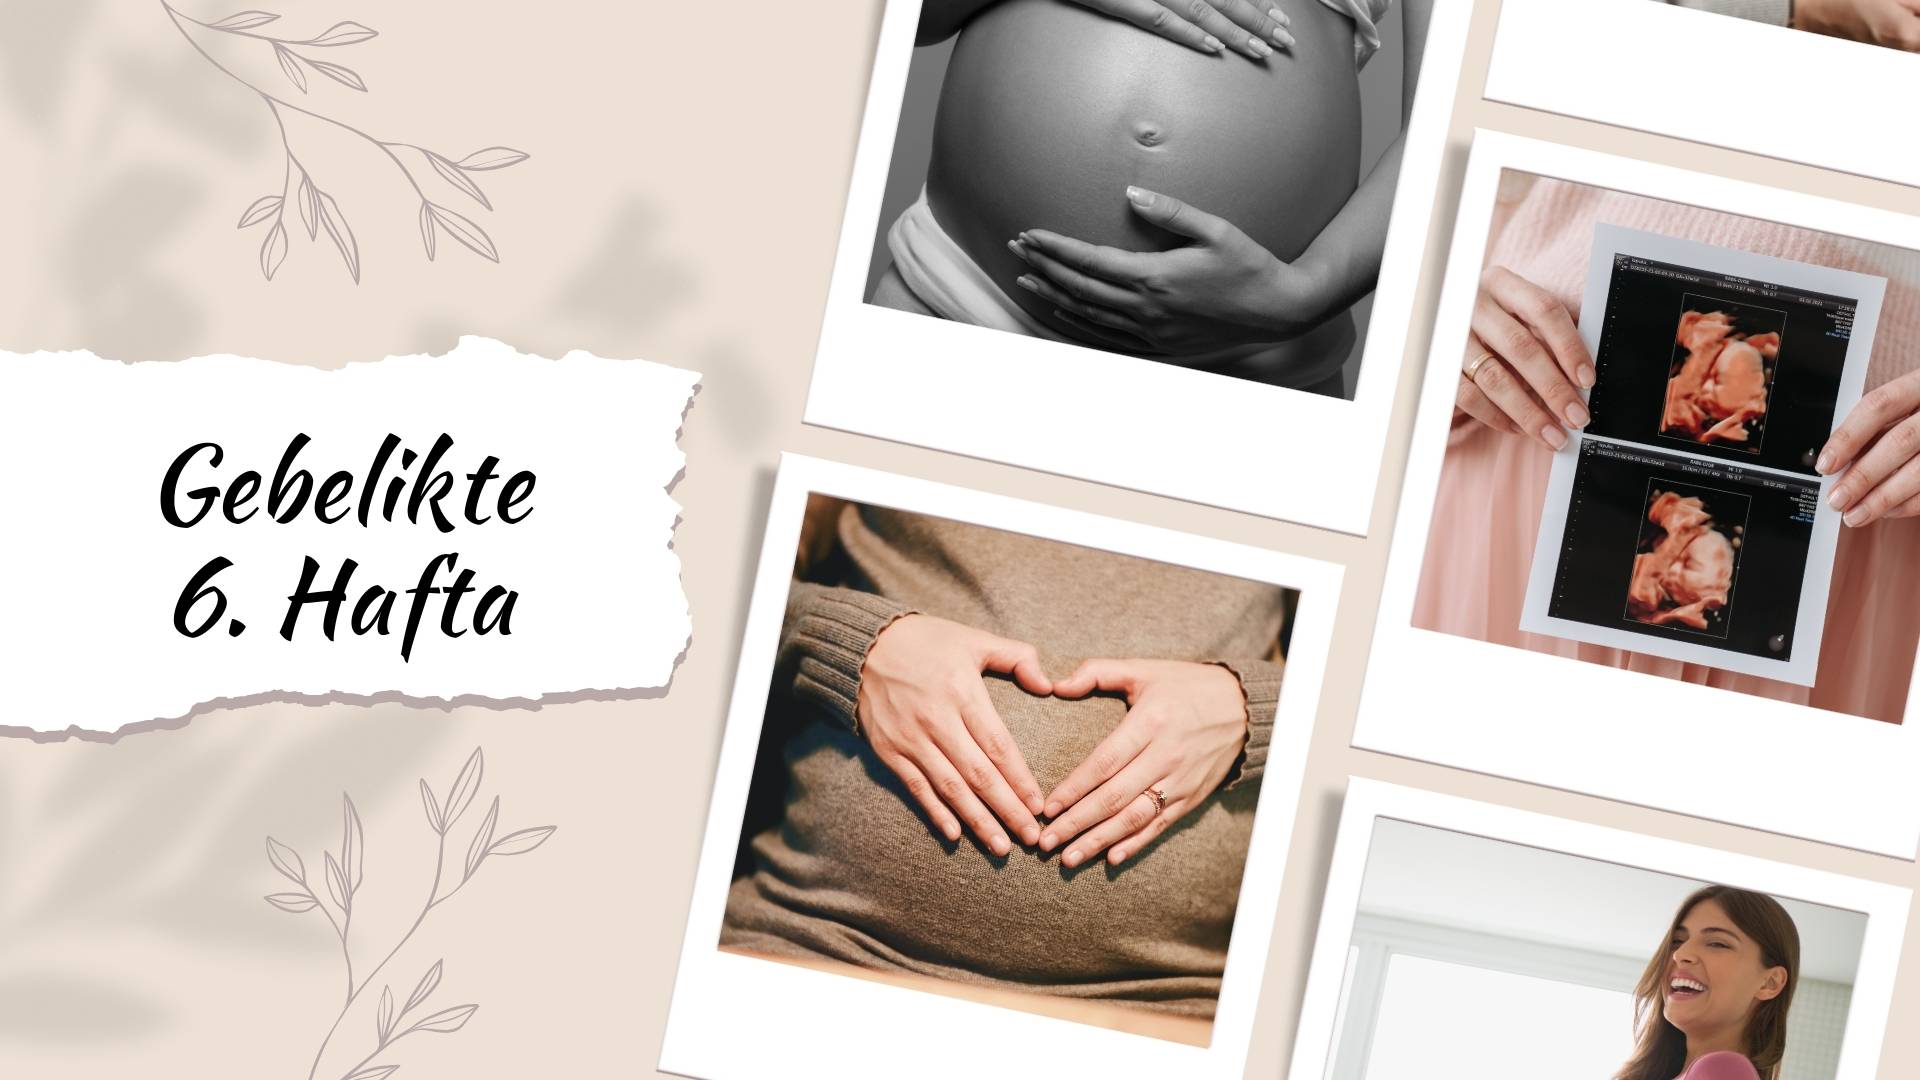 Hamileliğin 6. haftasında bebeğin gelişimi hakkında bilmeniz gereken her şey! Beslenme, egzersiz, semptomlar ve annenin ruhsal durumu. Detaylar yazımızda!